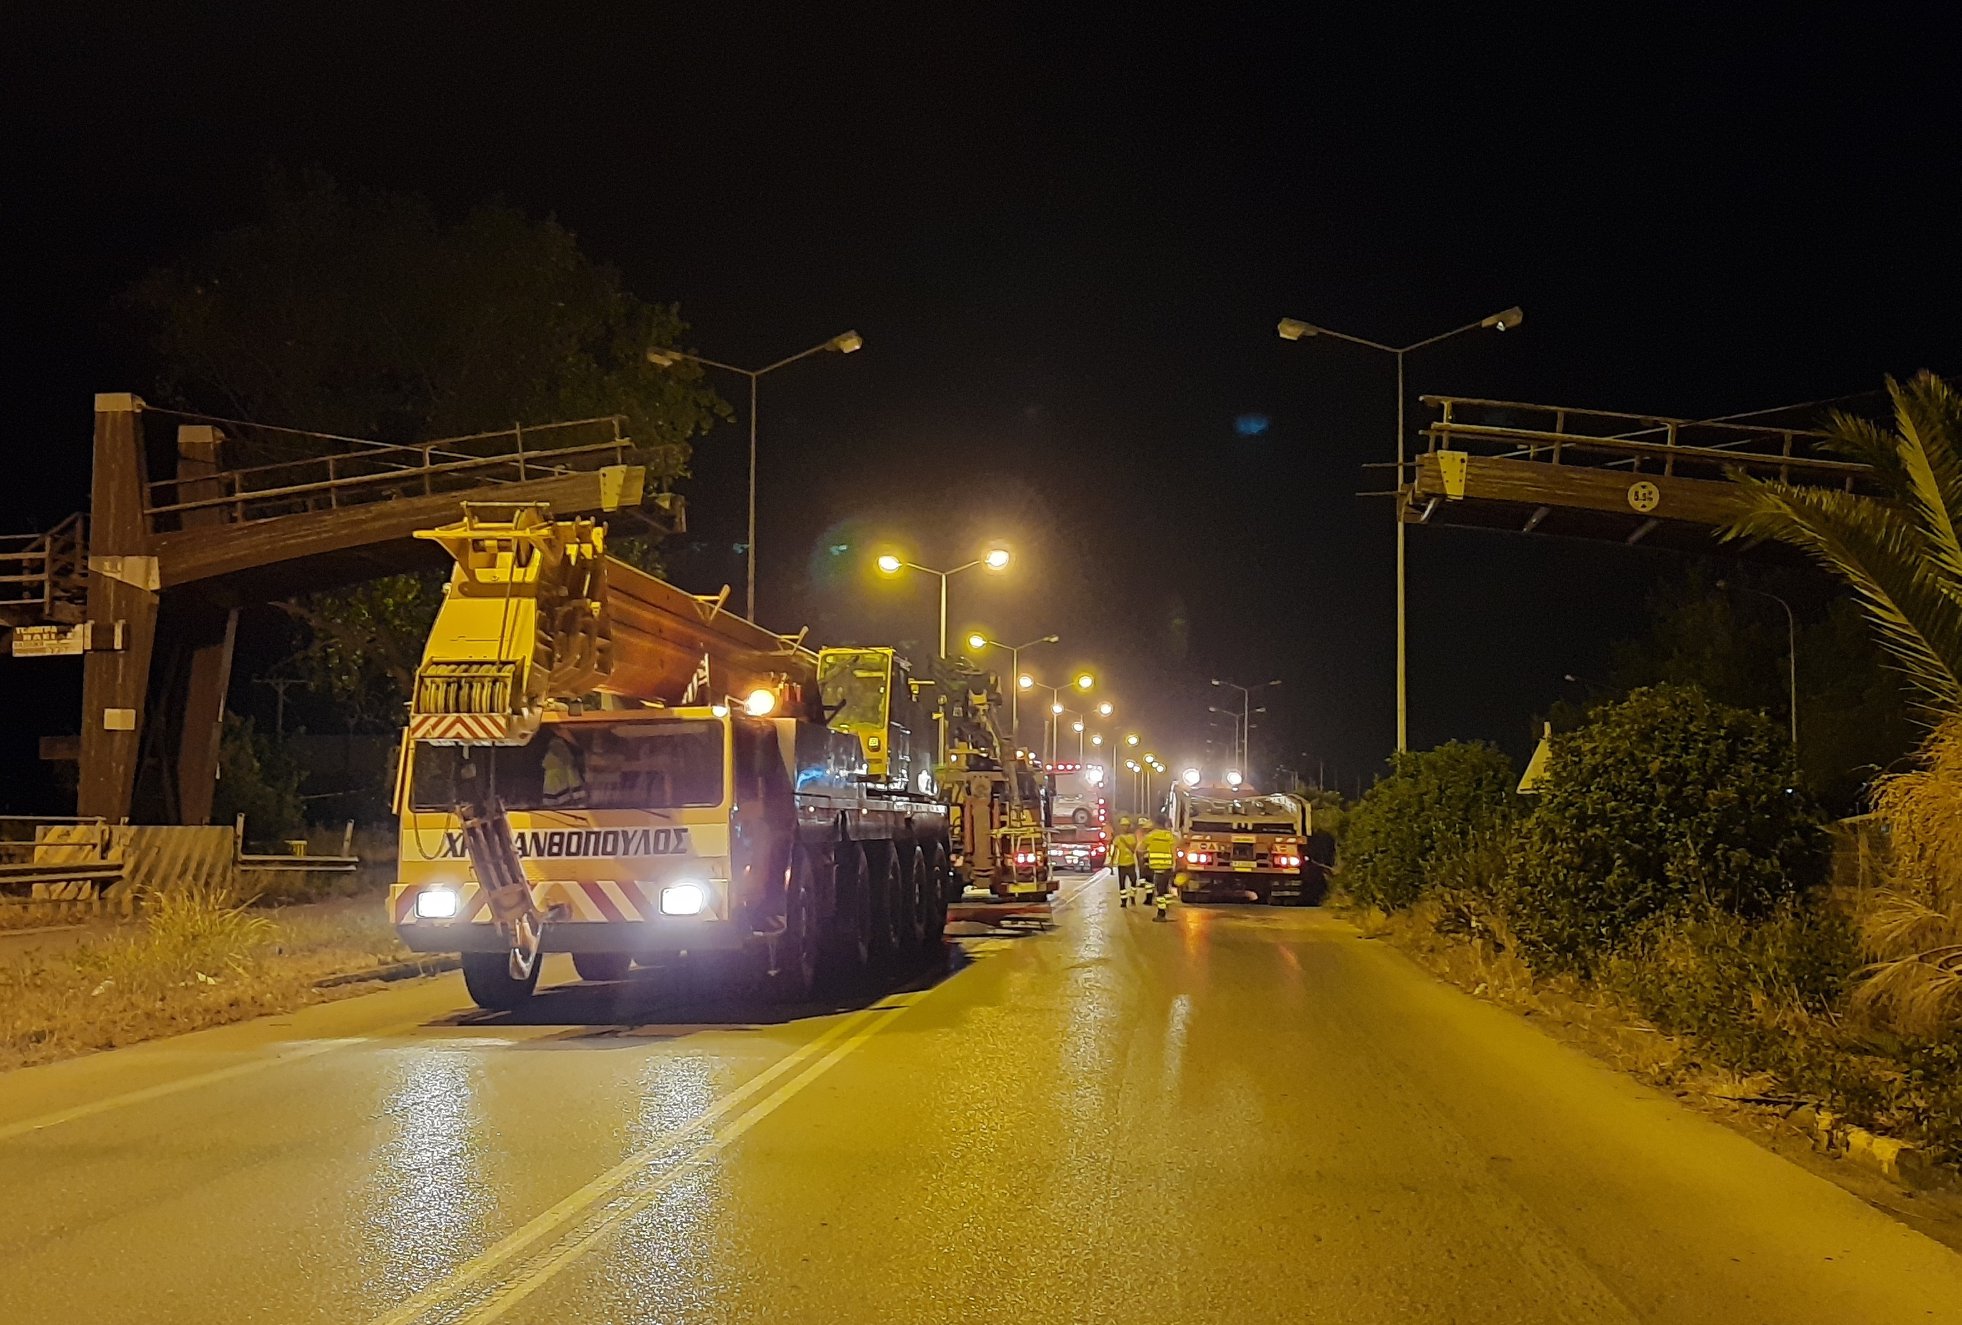 ΠΕ Ηλείας: Ολοκληρώθηκε η αποξήλωση της επικίνδυνης πεζογέφυρας στον ΟΑΕΔ στον Πύργο- Βασίλης Γιαννόπουλος: «Επιβεβλημένη η αποξήλωση λόγω της επικινδυνότητας» (photos)